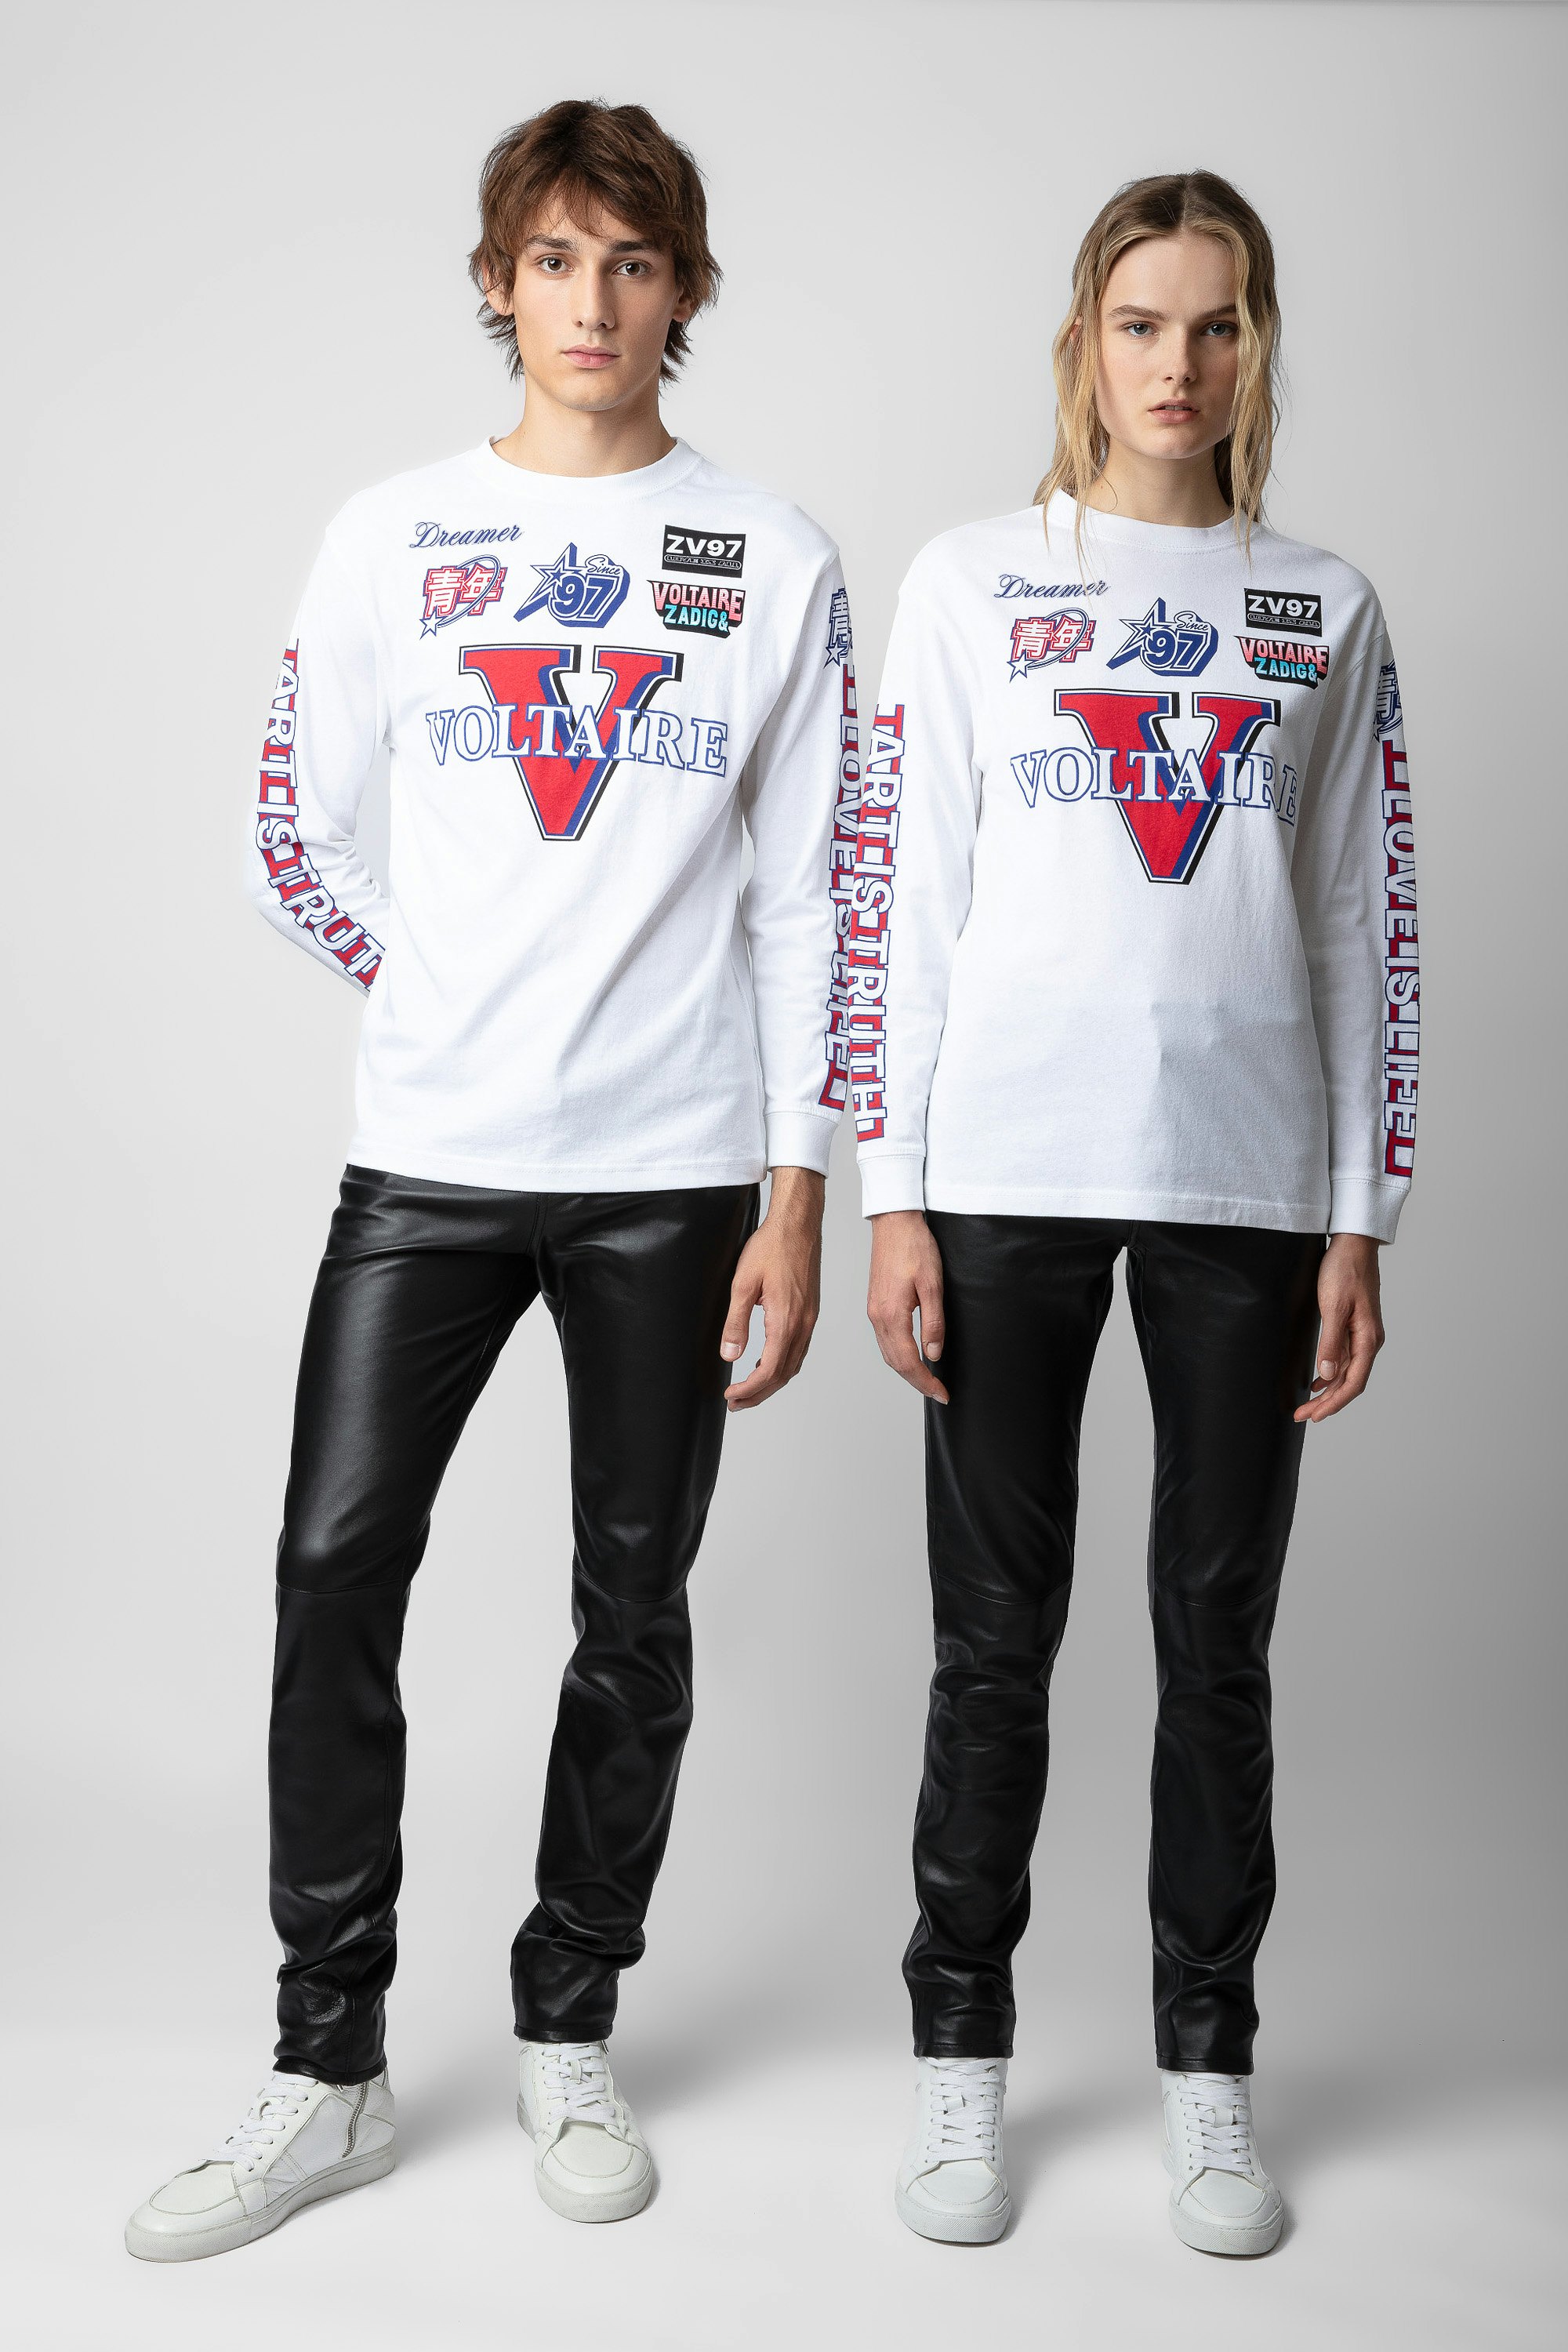 T-shirt Noane Voltaire - T-shirt à manches longues inspiration biker en coton blanc orné de motifs badges Voltaire et rembourré aux coudes unisexe.